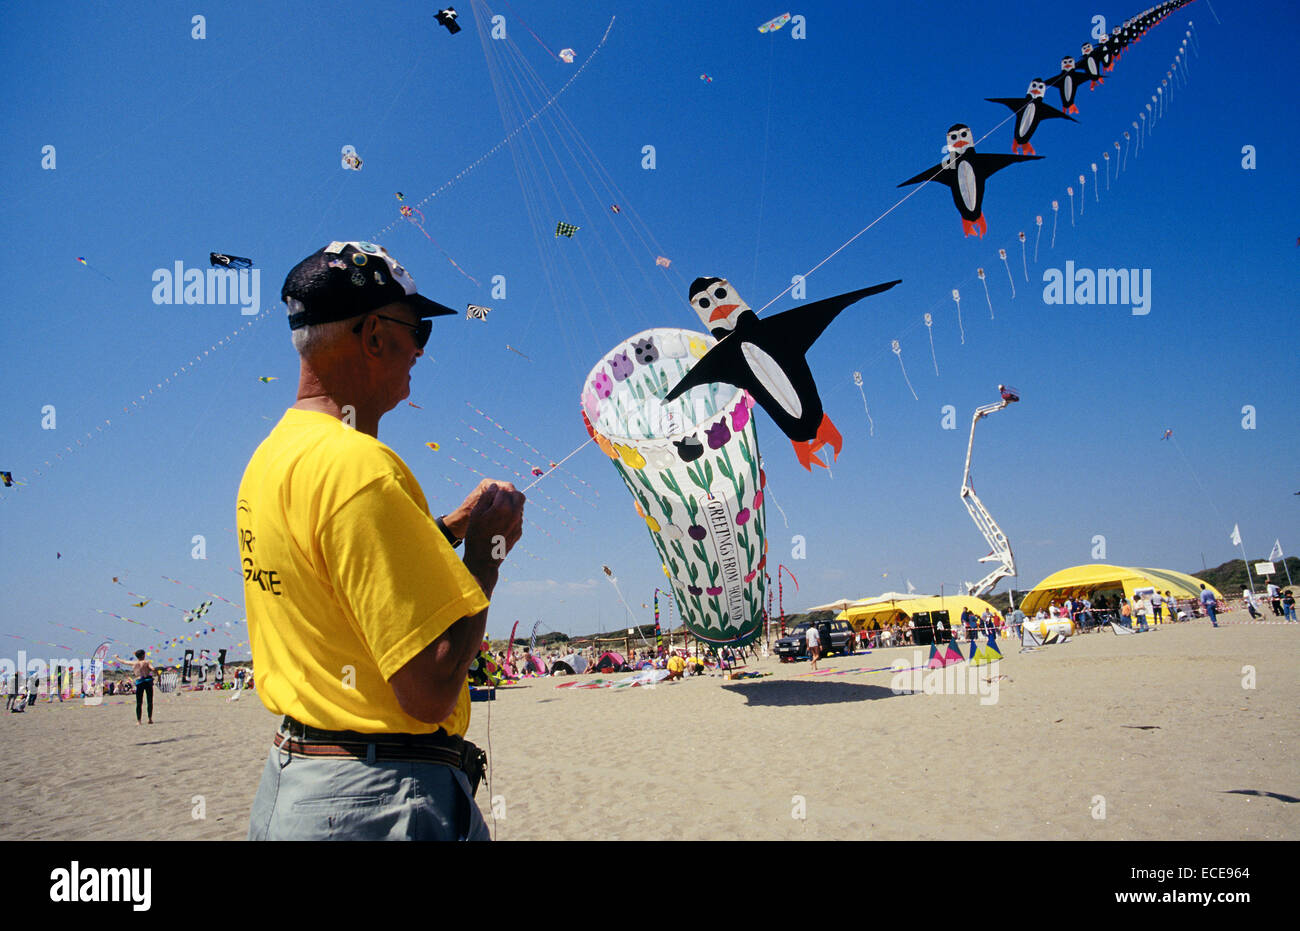 europe, italy, lazio, ostia beach, international kites meeting, a passionate about kites, pinguin-shaped kite Stock Photo